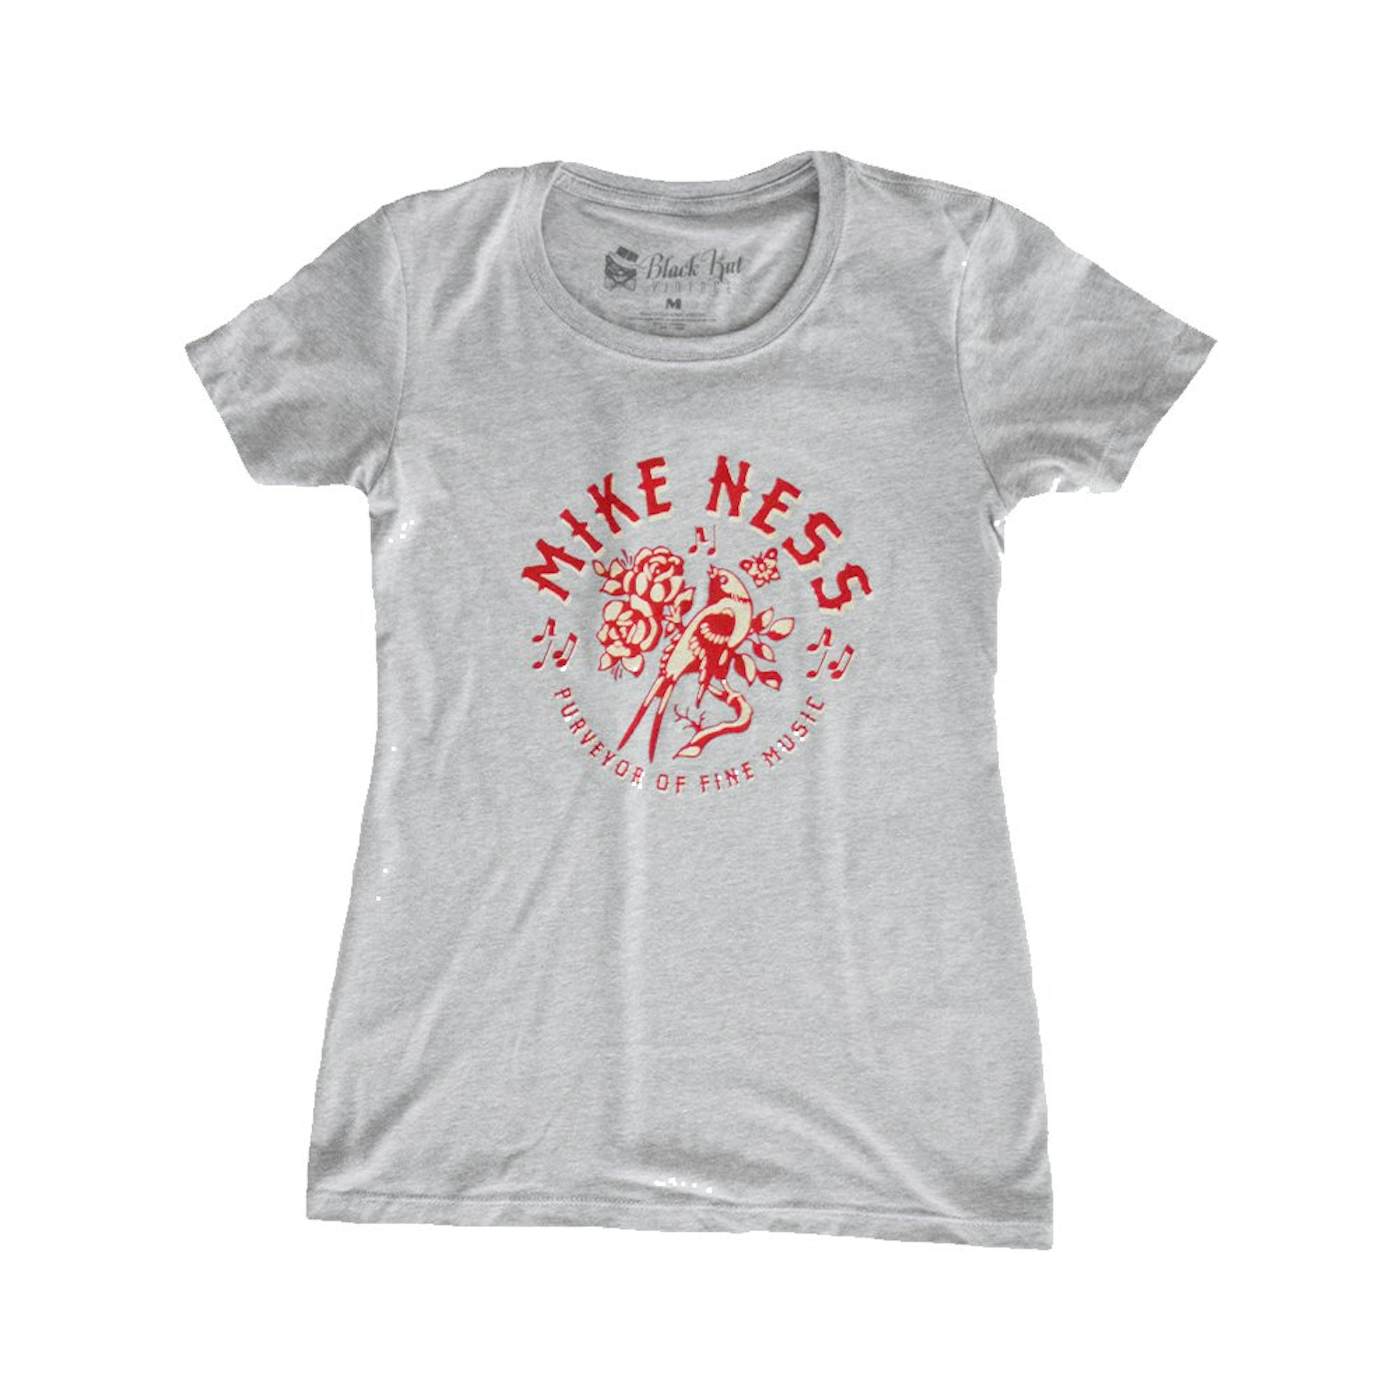 Mike Ness Songbird Women's T-Shirt (Grey)